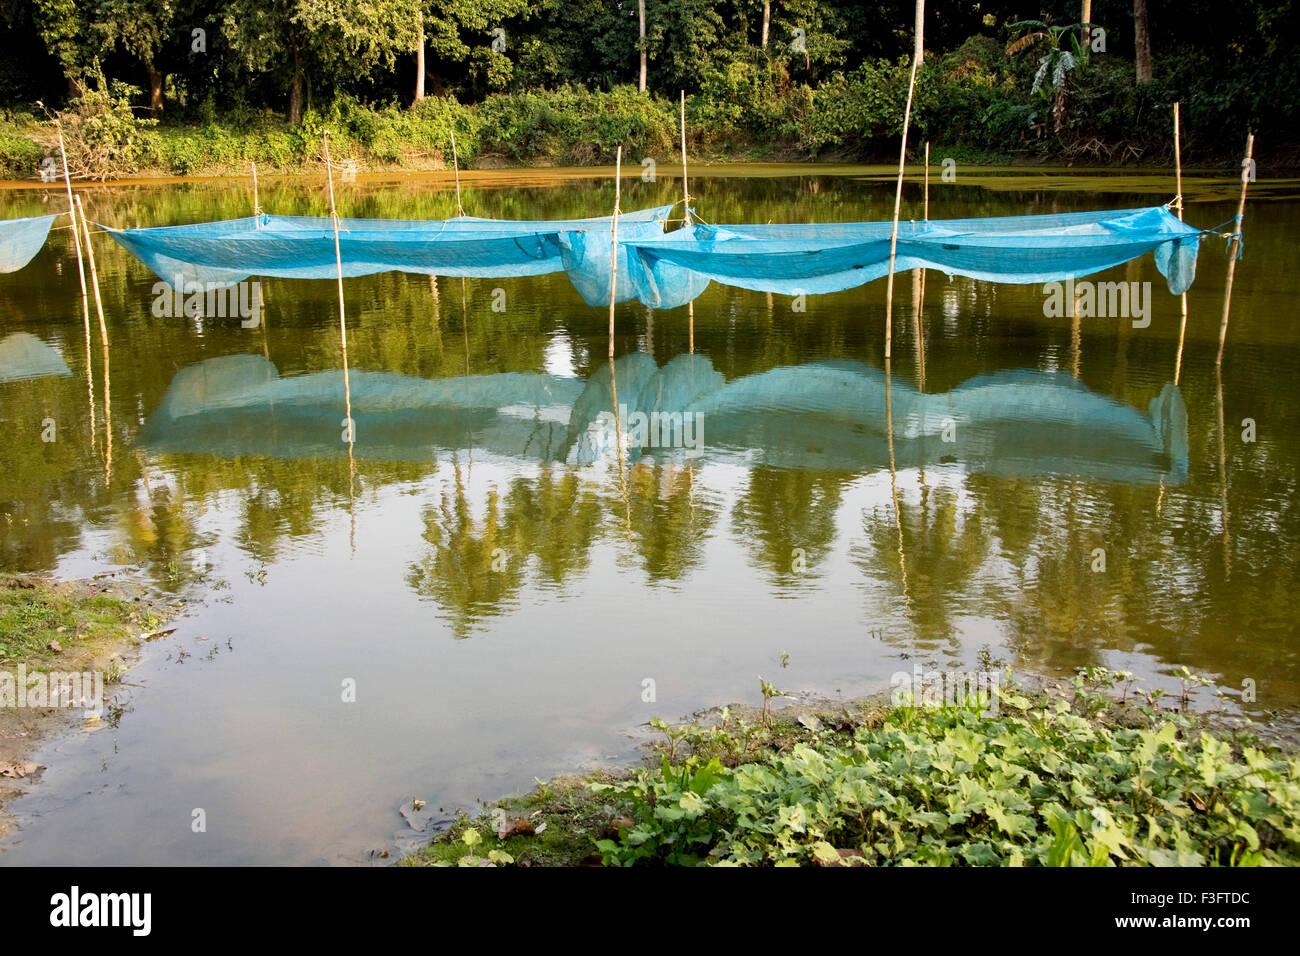 NET befindet sich im Teich die Fische zu trennen, die angebaut werden. Westbengalen; Indien Stockfoto